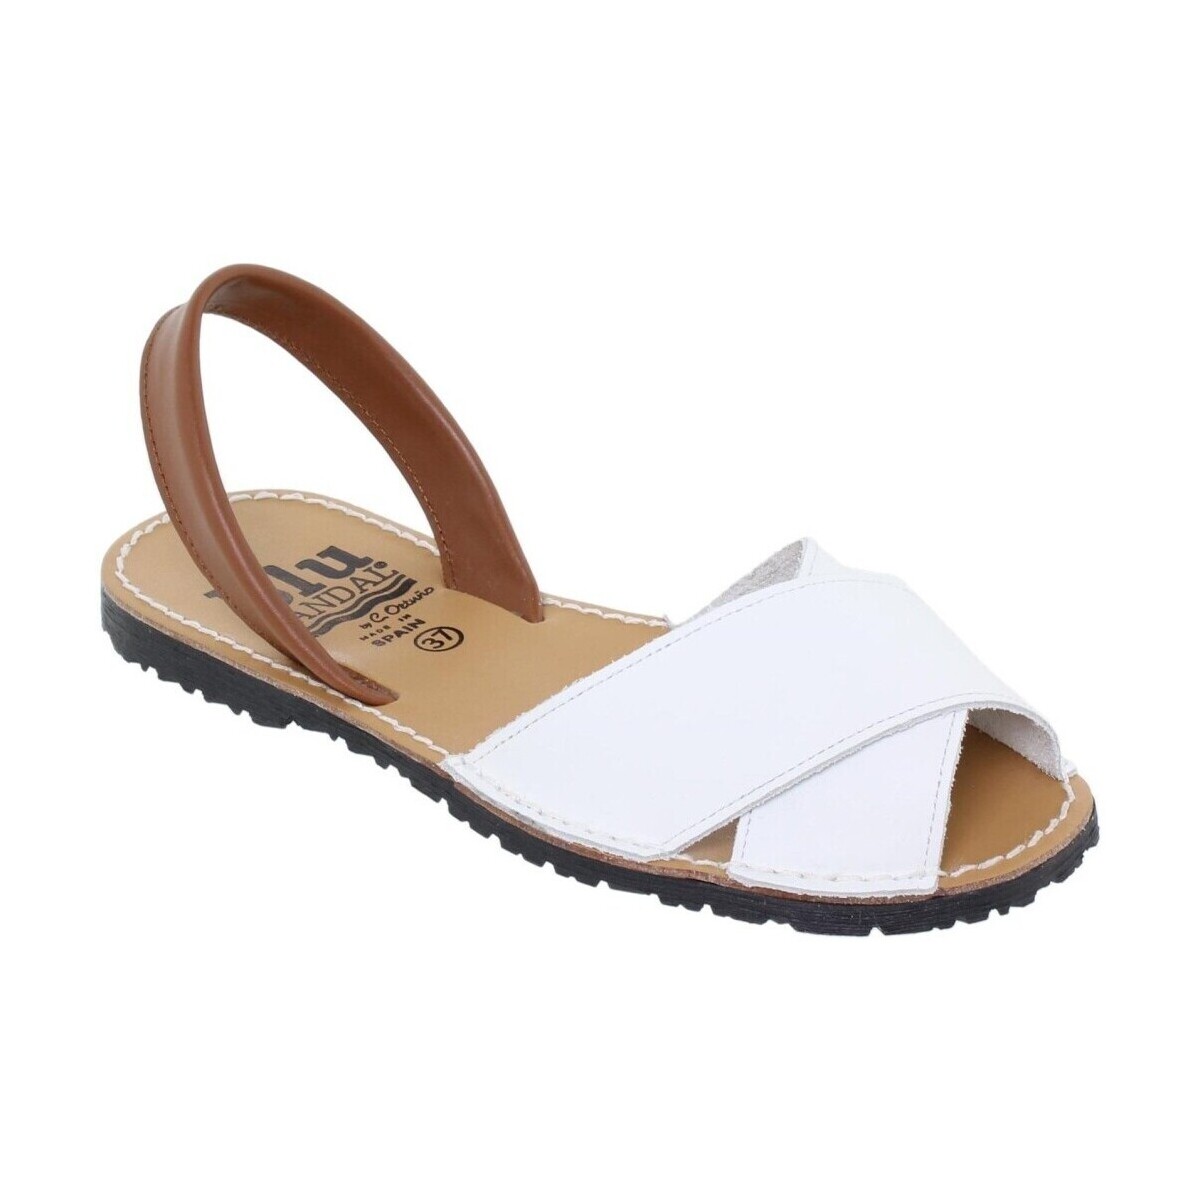 Zapatos Mujer Sandalias Blusandal Avarcas Menorquinas blancas by Blanco